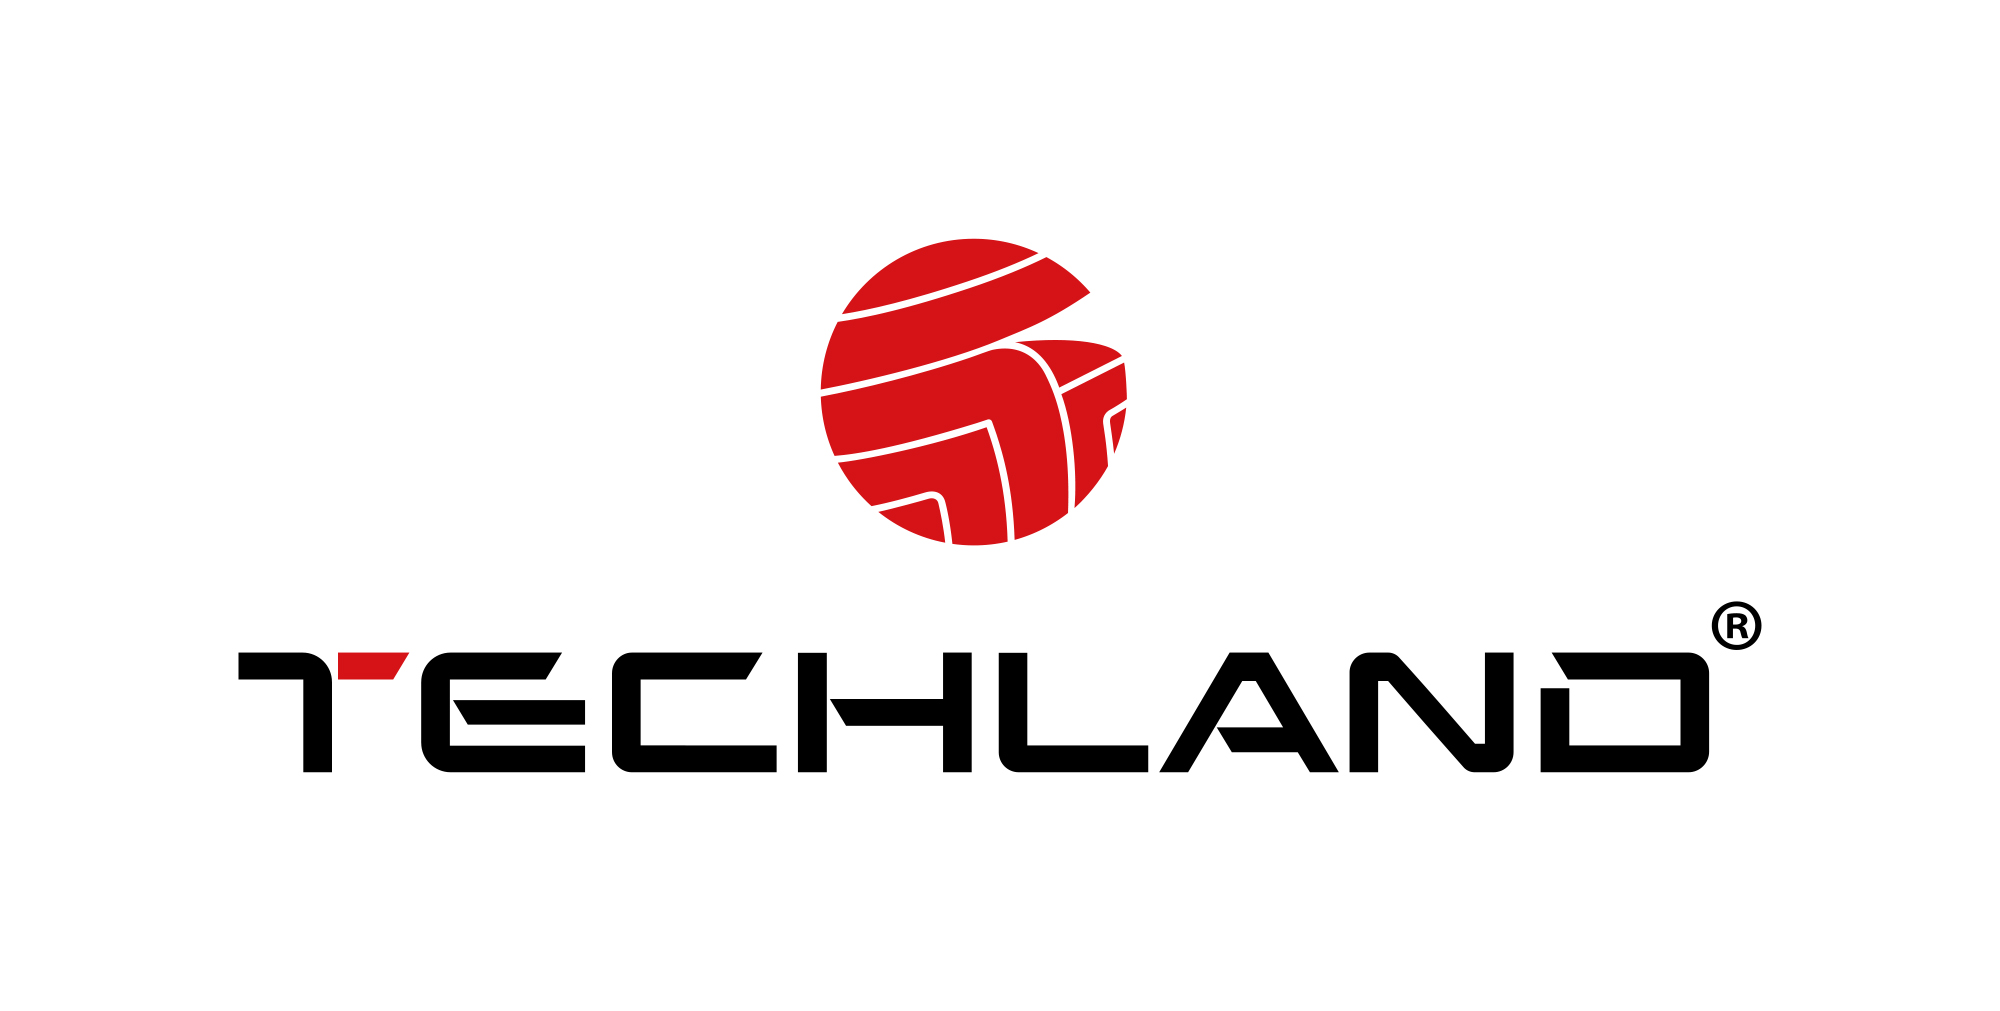 logo Techland